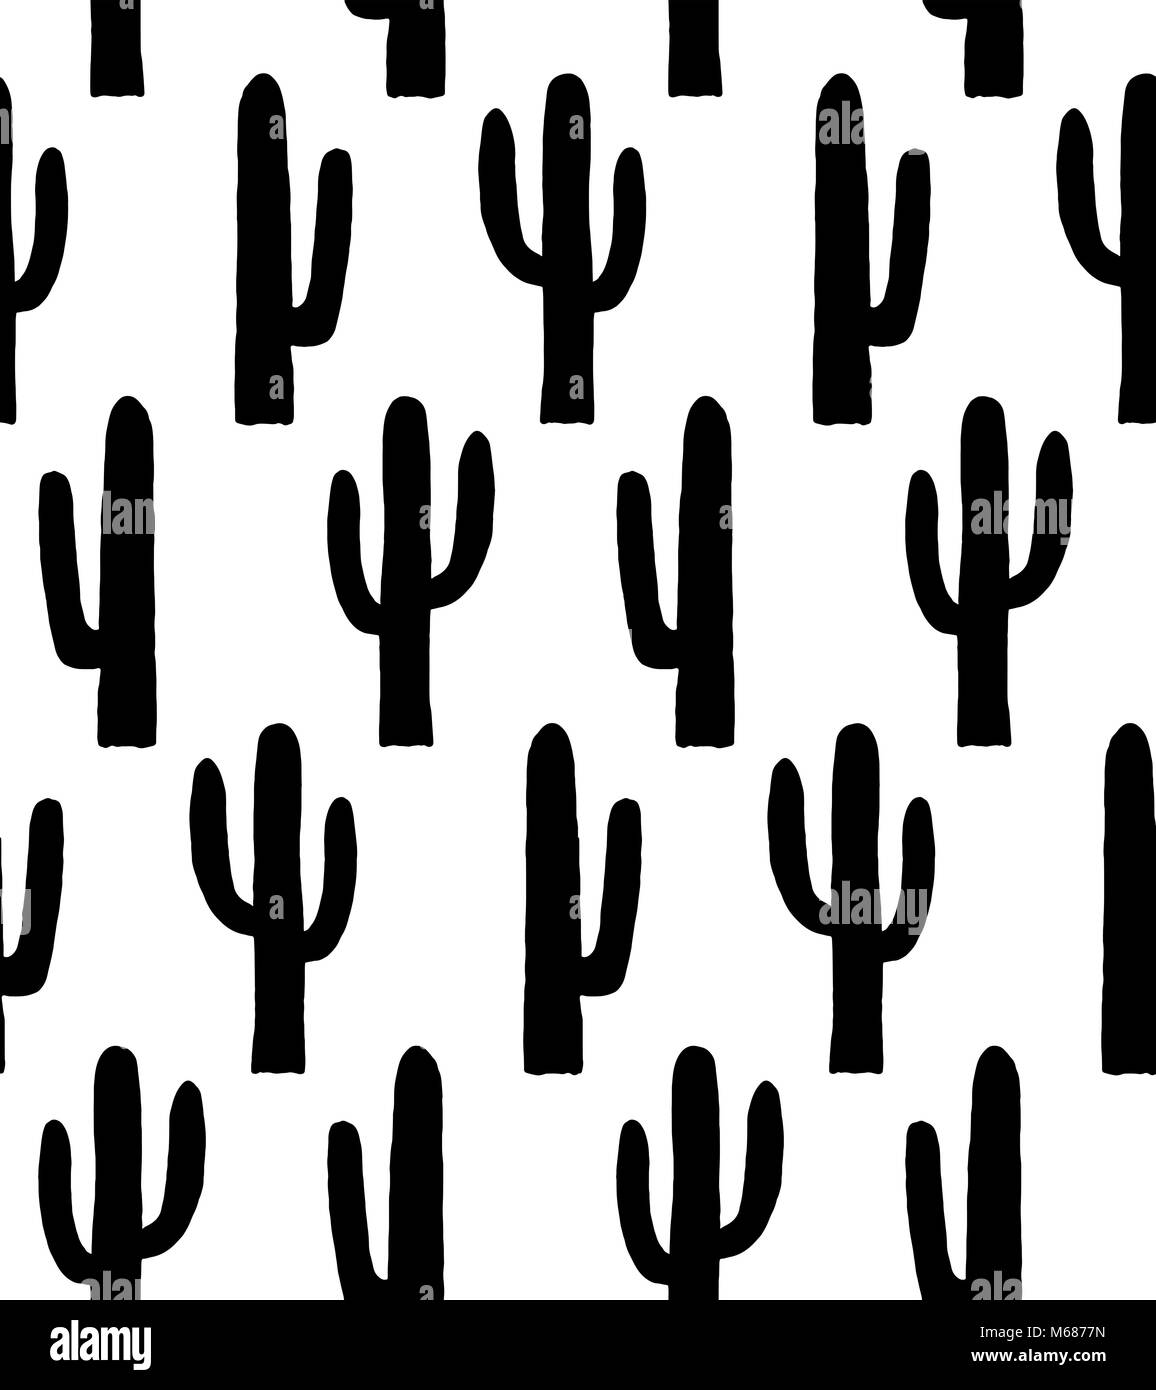 Black and white cactus pattern. Botanical background Stock Photo